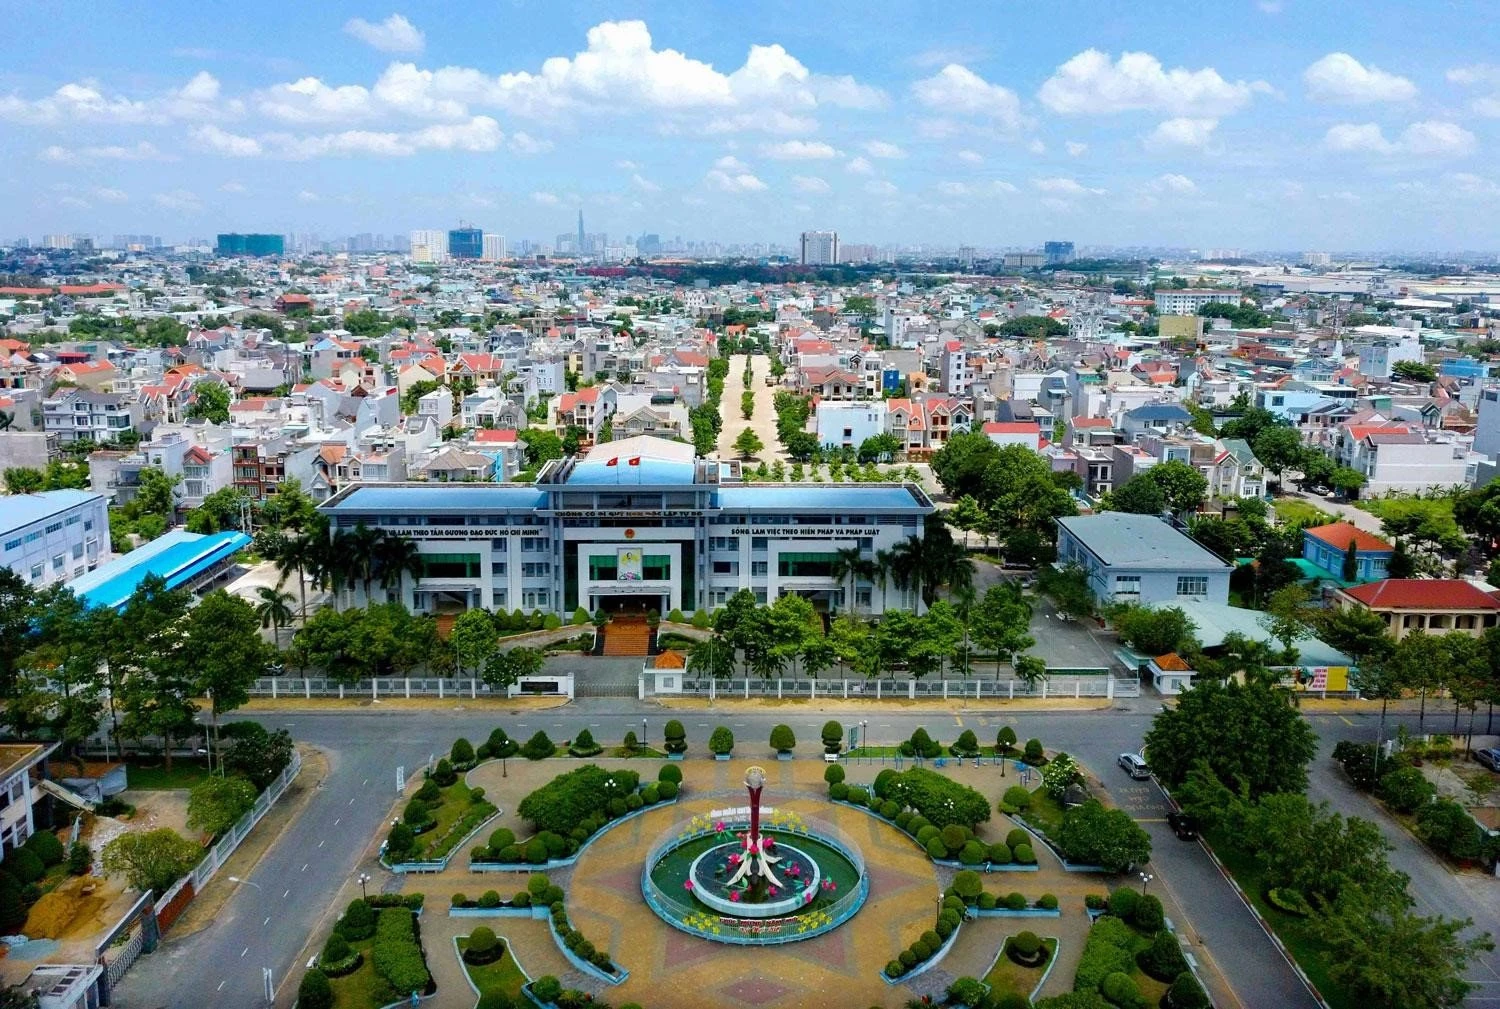 Sau khi chính thức trở thành thành phố từ ngày 01/02/2020, Thuận An đang thay đổi diện mạo từng ngày để xứng đáng trở thành “Phố Wall” của Bình Dương. Với định hướng phát triển trở thành “Phố trung tâm thương mại”, Thuận An sẽ có đại lộ tài chính, thương mại và các toà tháp biểu tượng với hàng loạt các trung tâm thương mại, trường quốc tế, bệnh viện quốc tế, sân golf… 